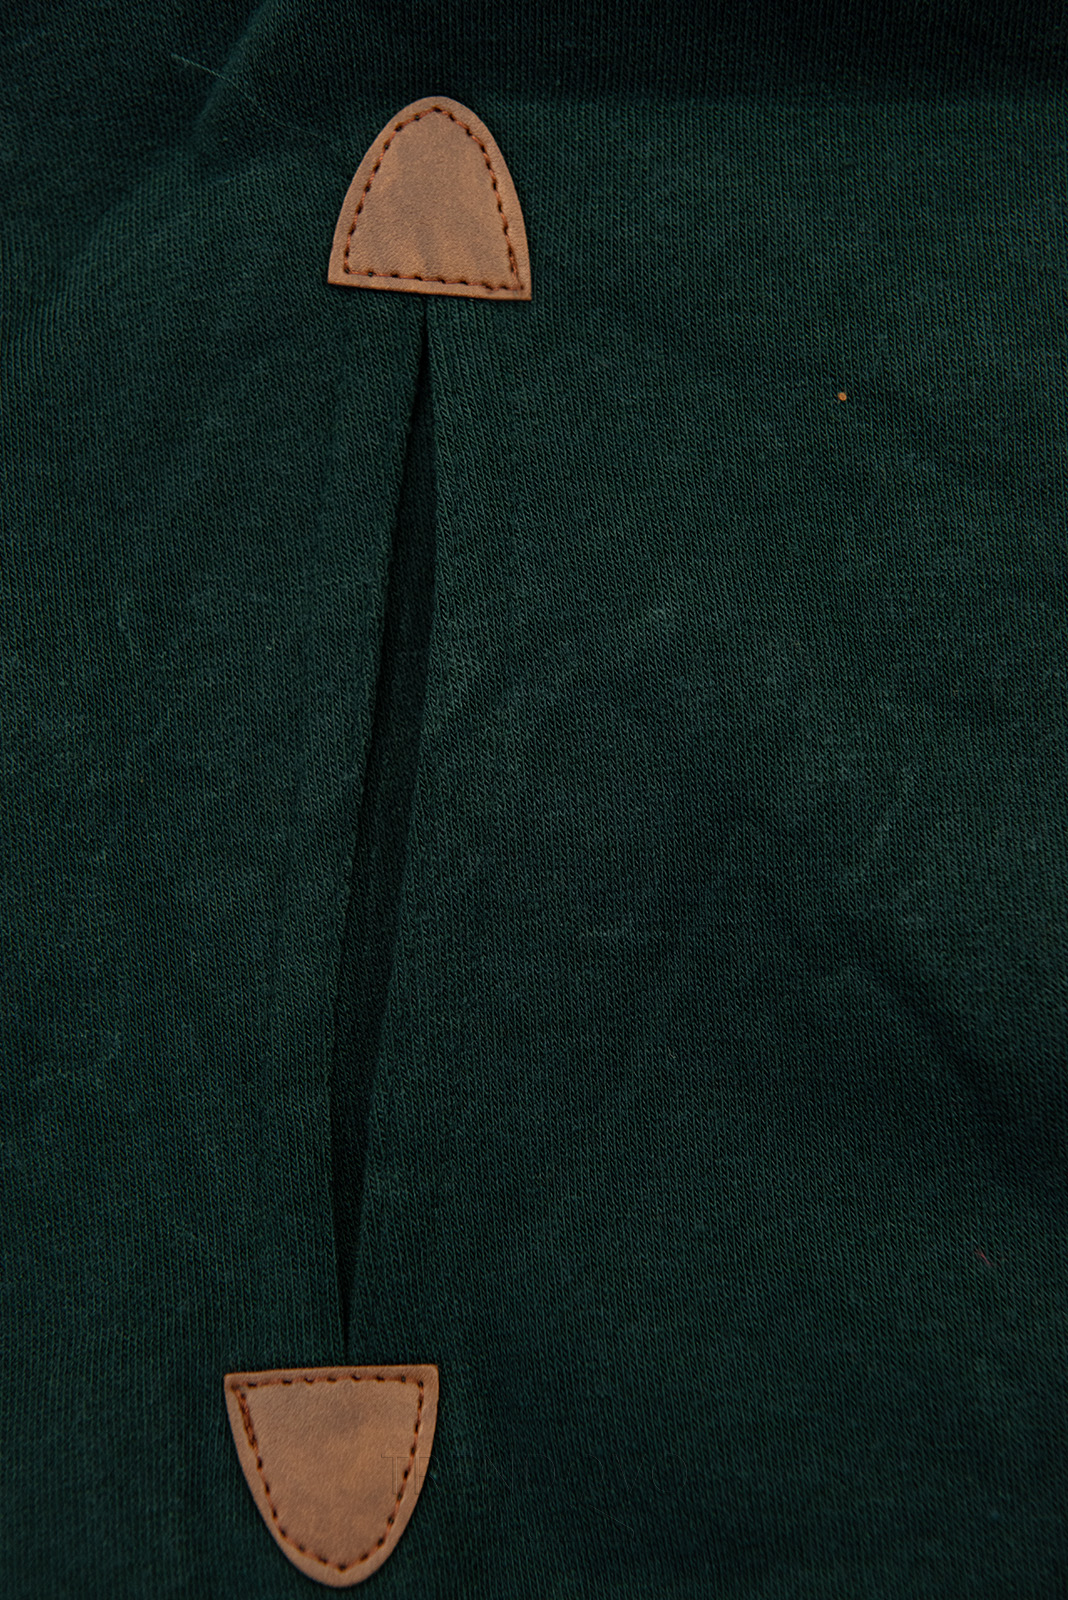 Tmavě zelená dlouhá mikina s károvanou kapucí